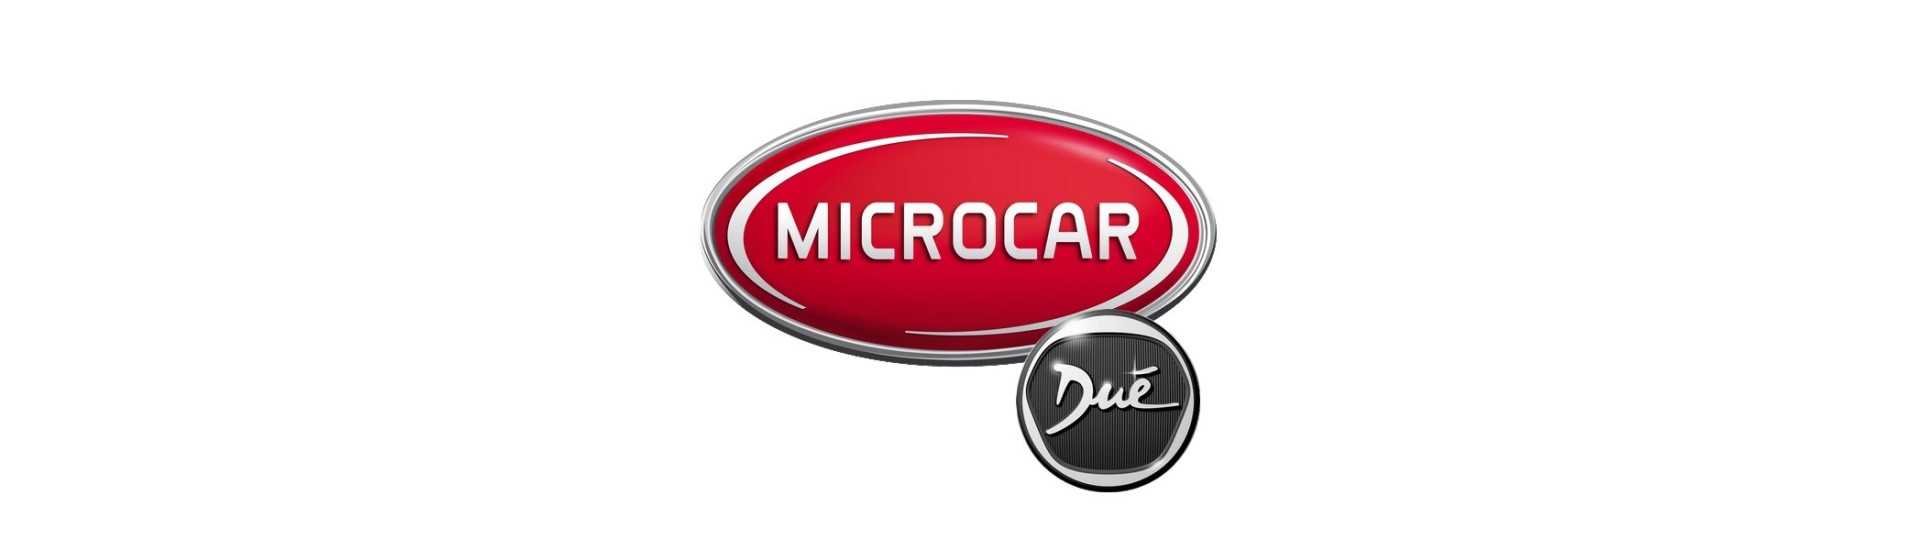 Cubo de roda ao melhor preço para o carro sem uma permissão Microcar Dué